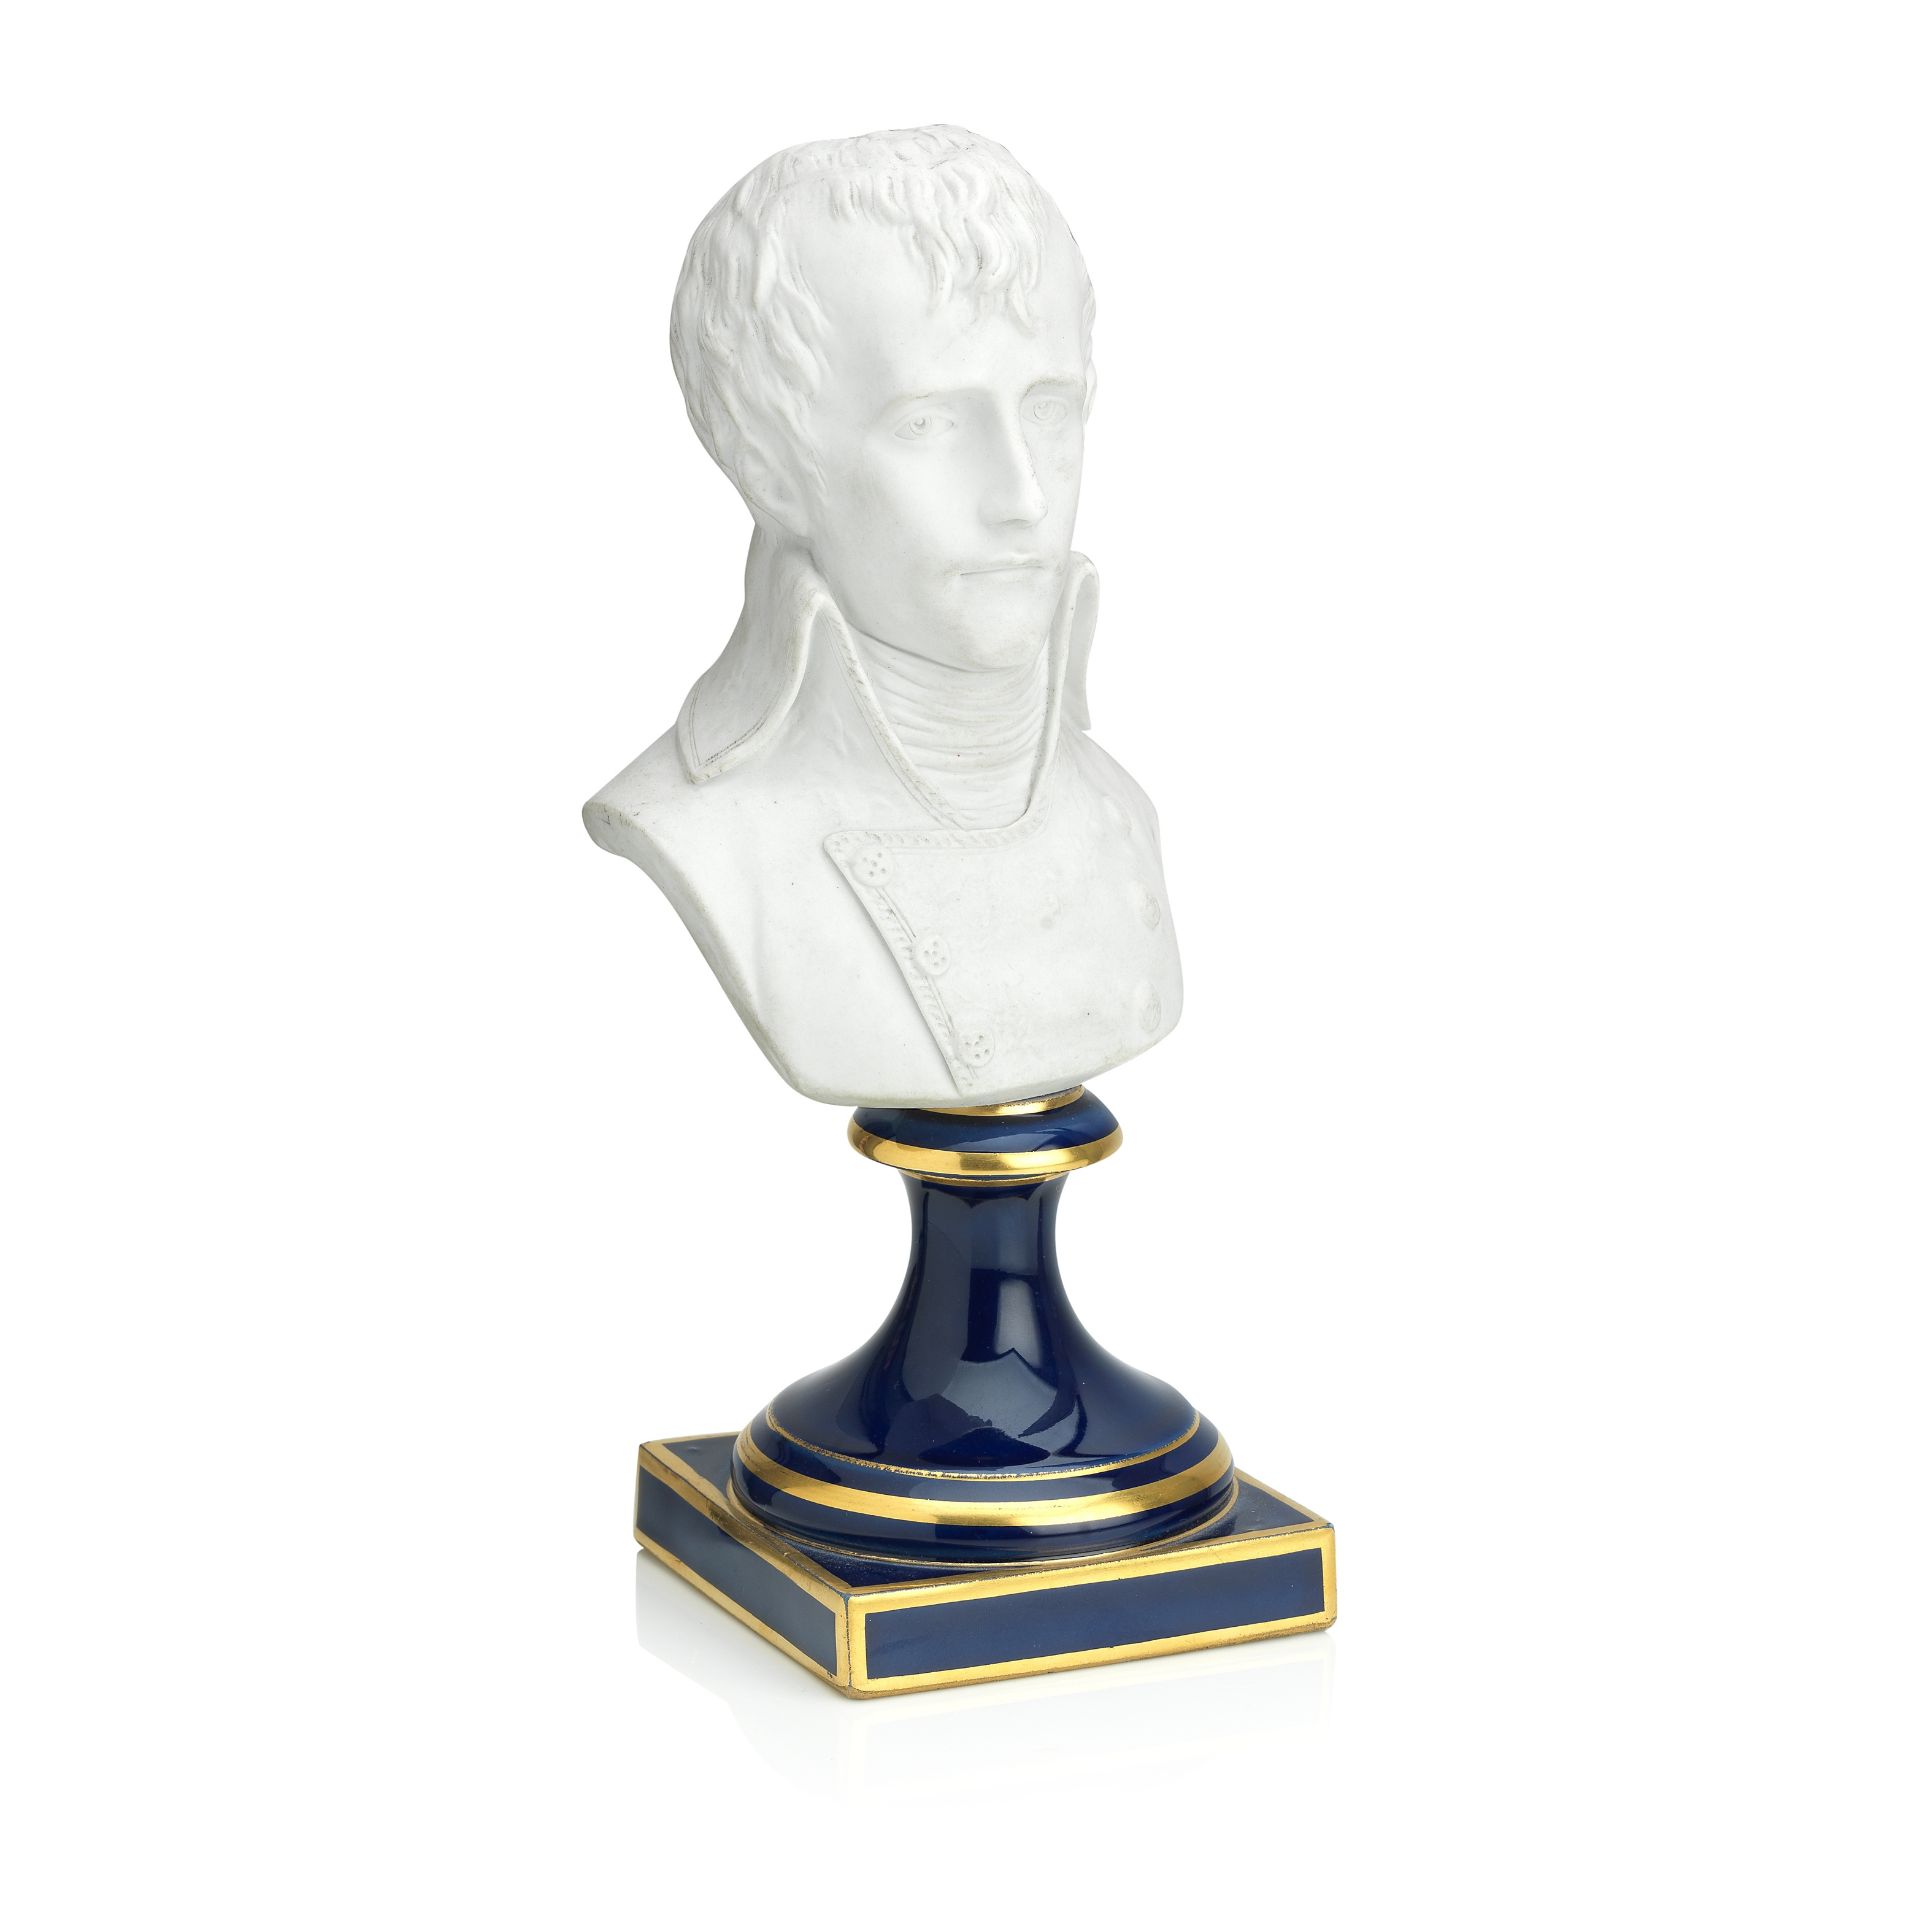 A Sèvres style biscuit portrait bust of Napoléon Bonaparte